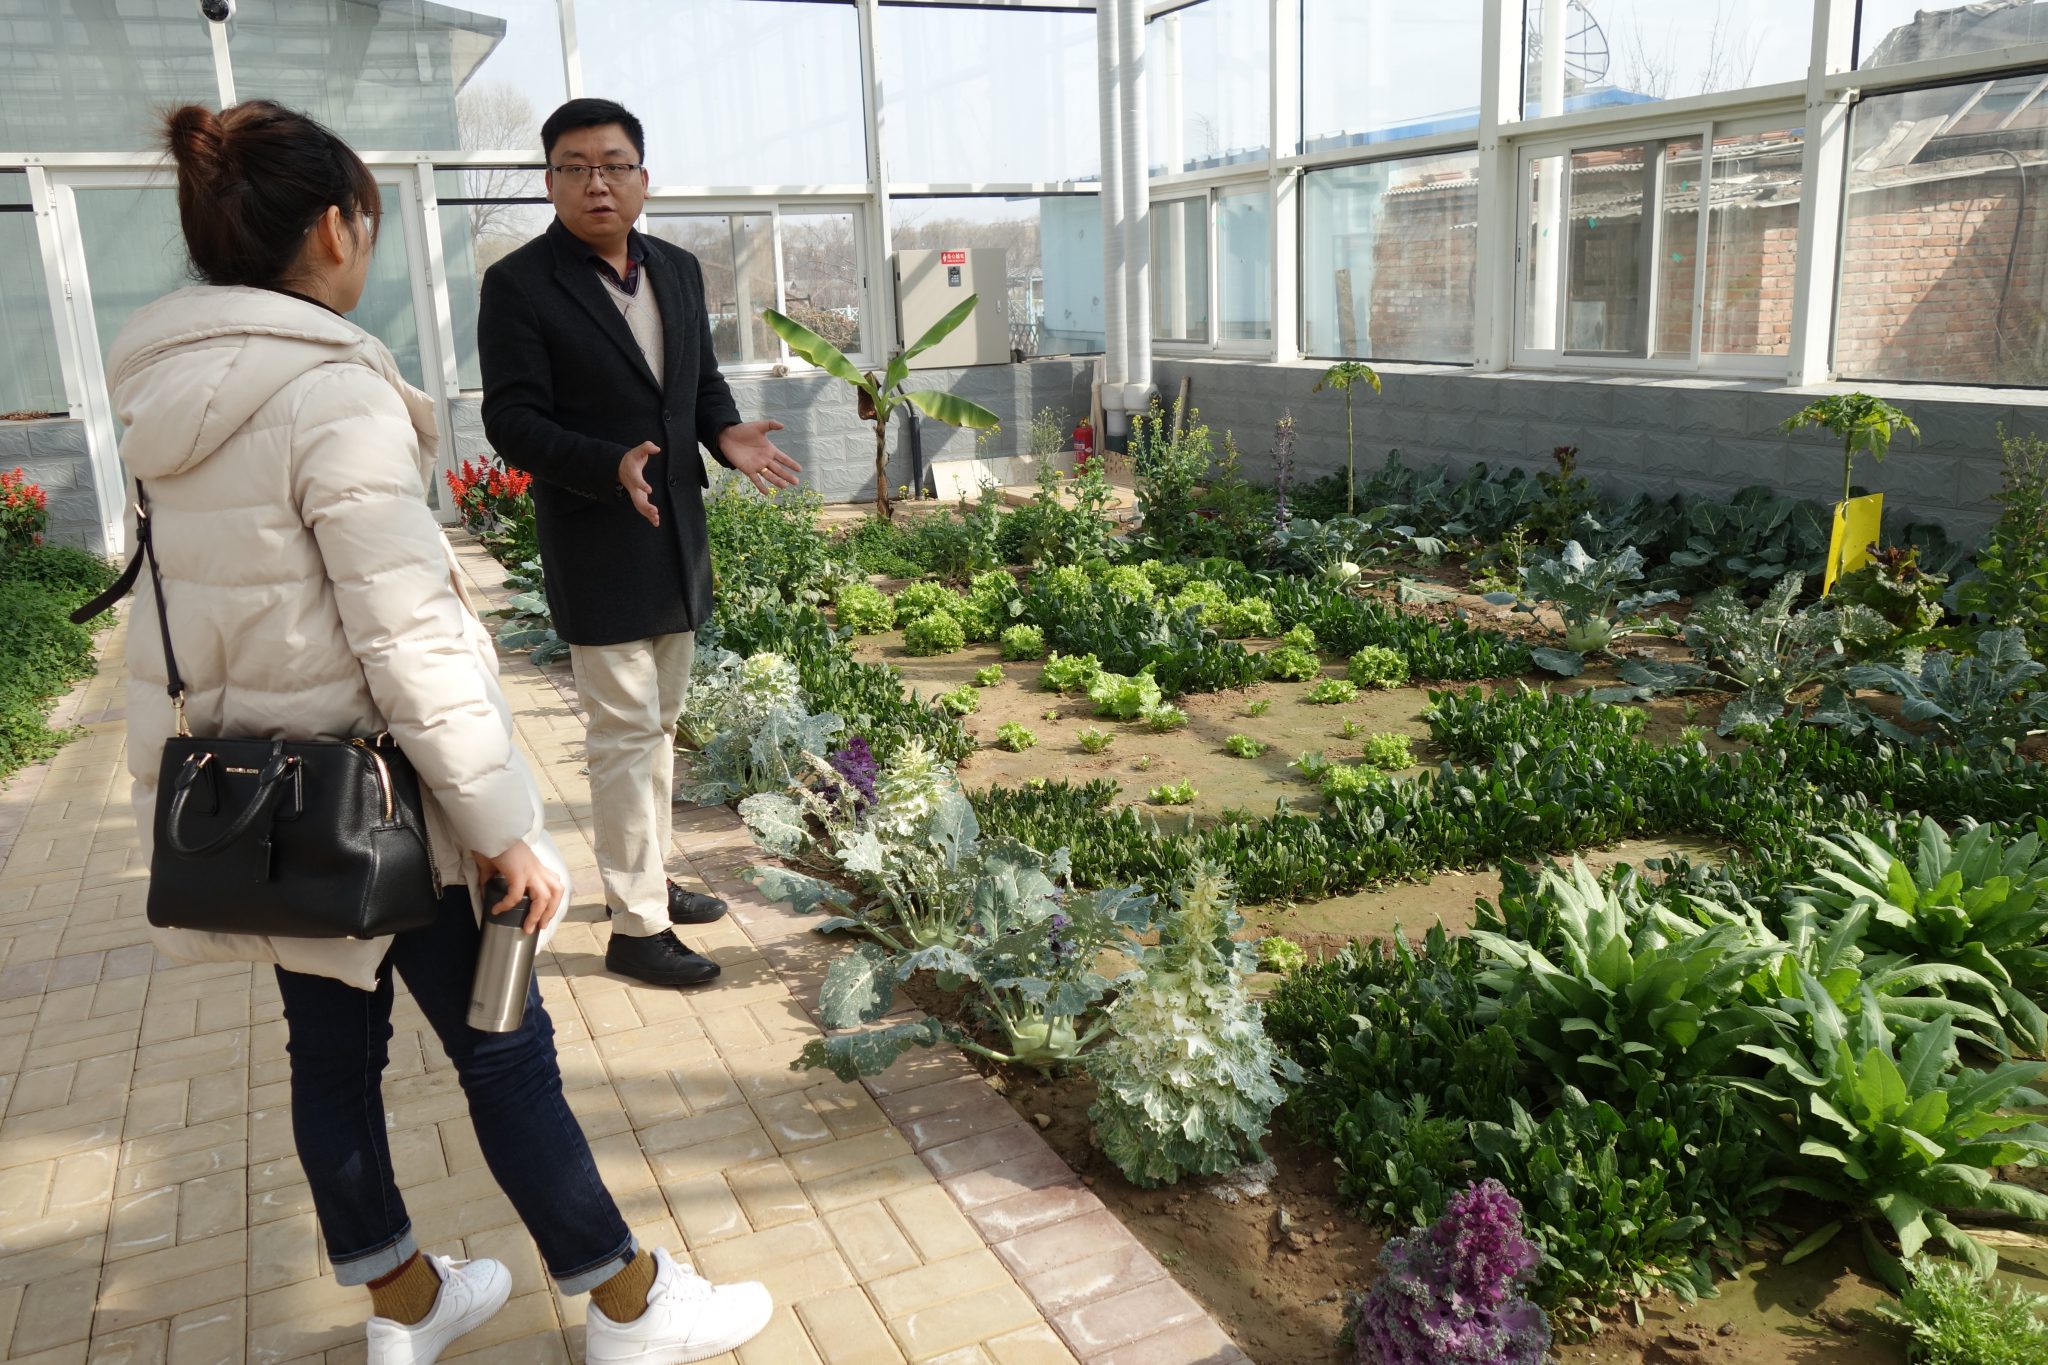 Urban farming in China